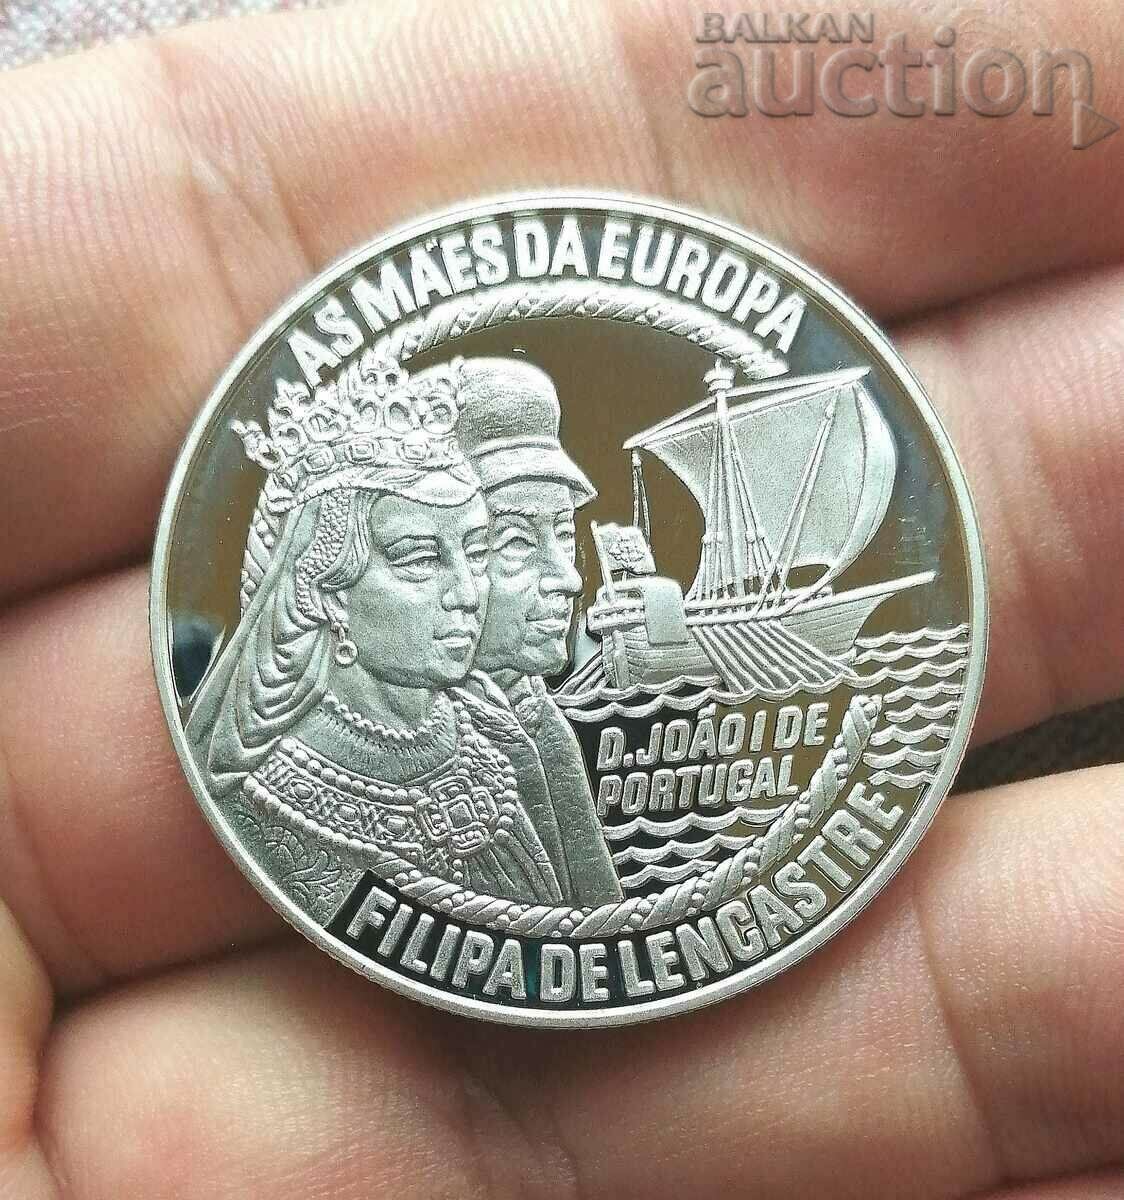 Portogalia 50 euro, 1996 г. As Maes'da Europa